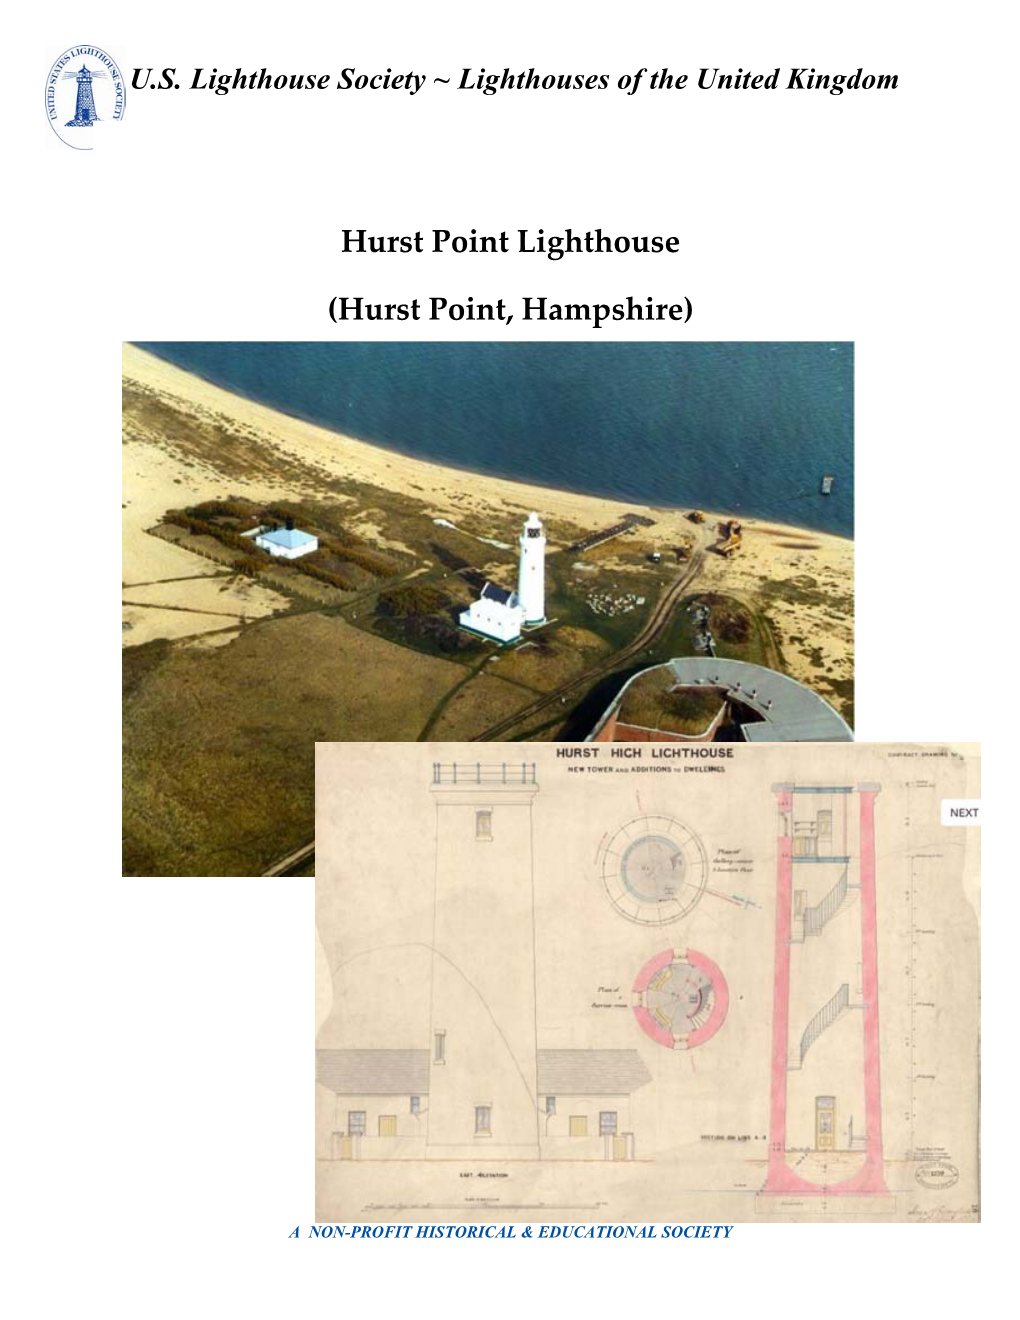 Hurst Point Lighthouse, Hurst Point